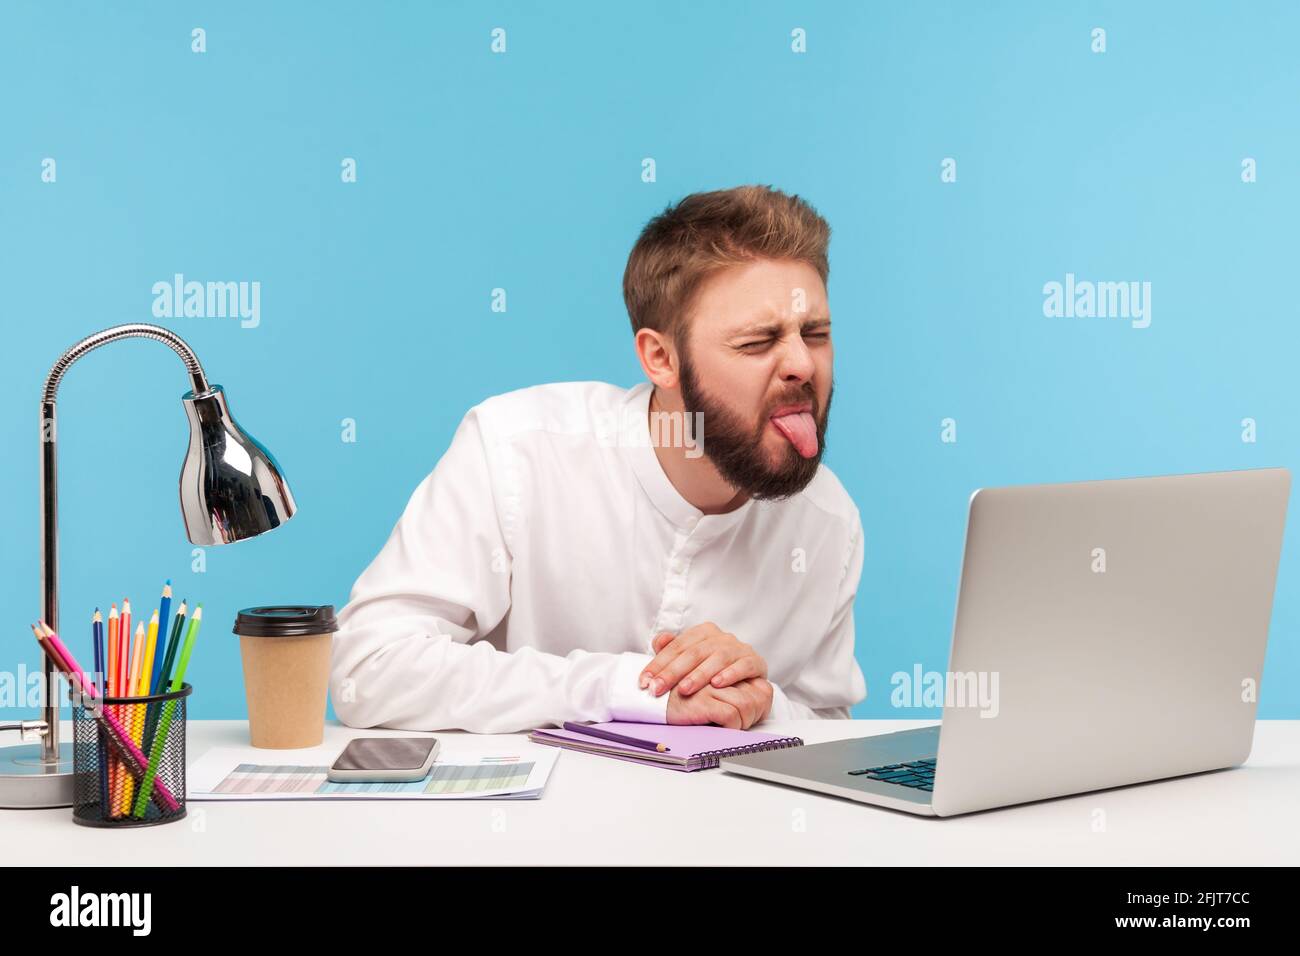 Lustiger unzufriedener Mann mit Bart, der die Zunge zeigt, sprechender Videoanruf auf dem Laptop, der am Arbeitsplatz sitzt, Spaß hat und kindhaftes Verhalten demonstriert. Ind Stockfoto